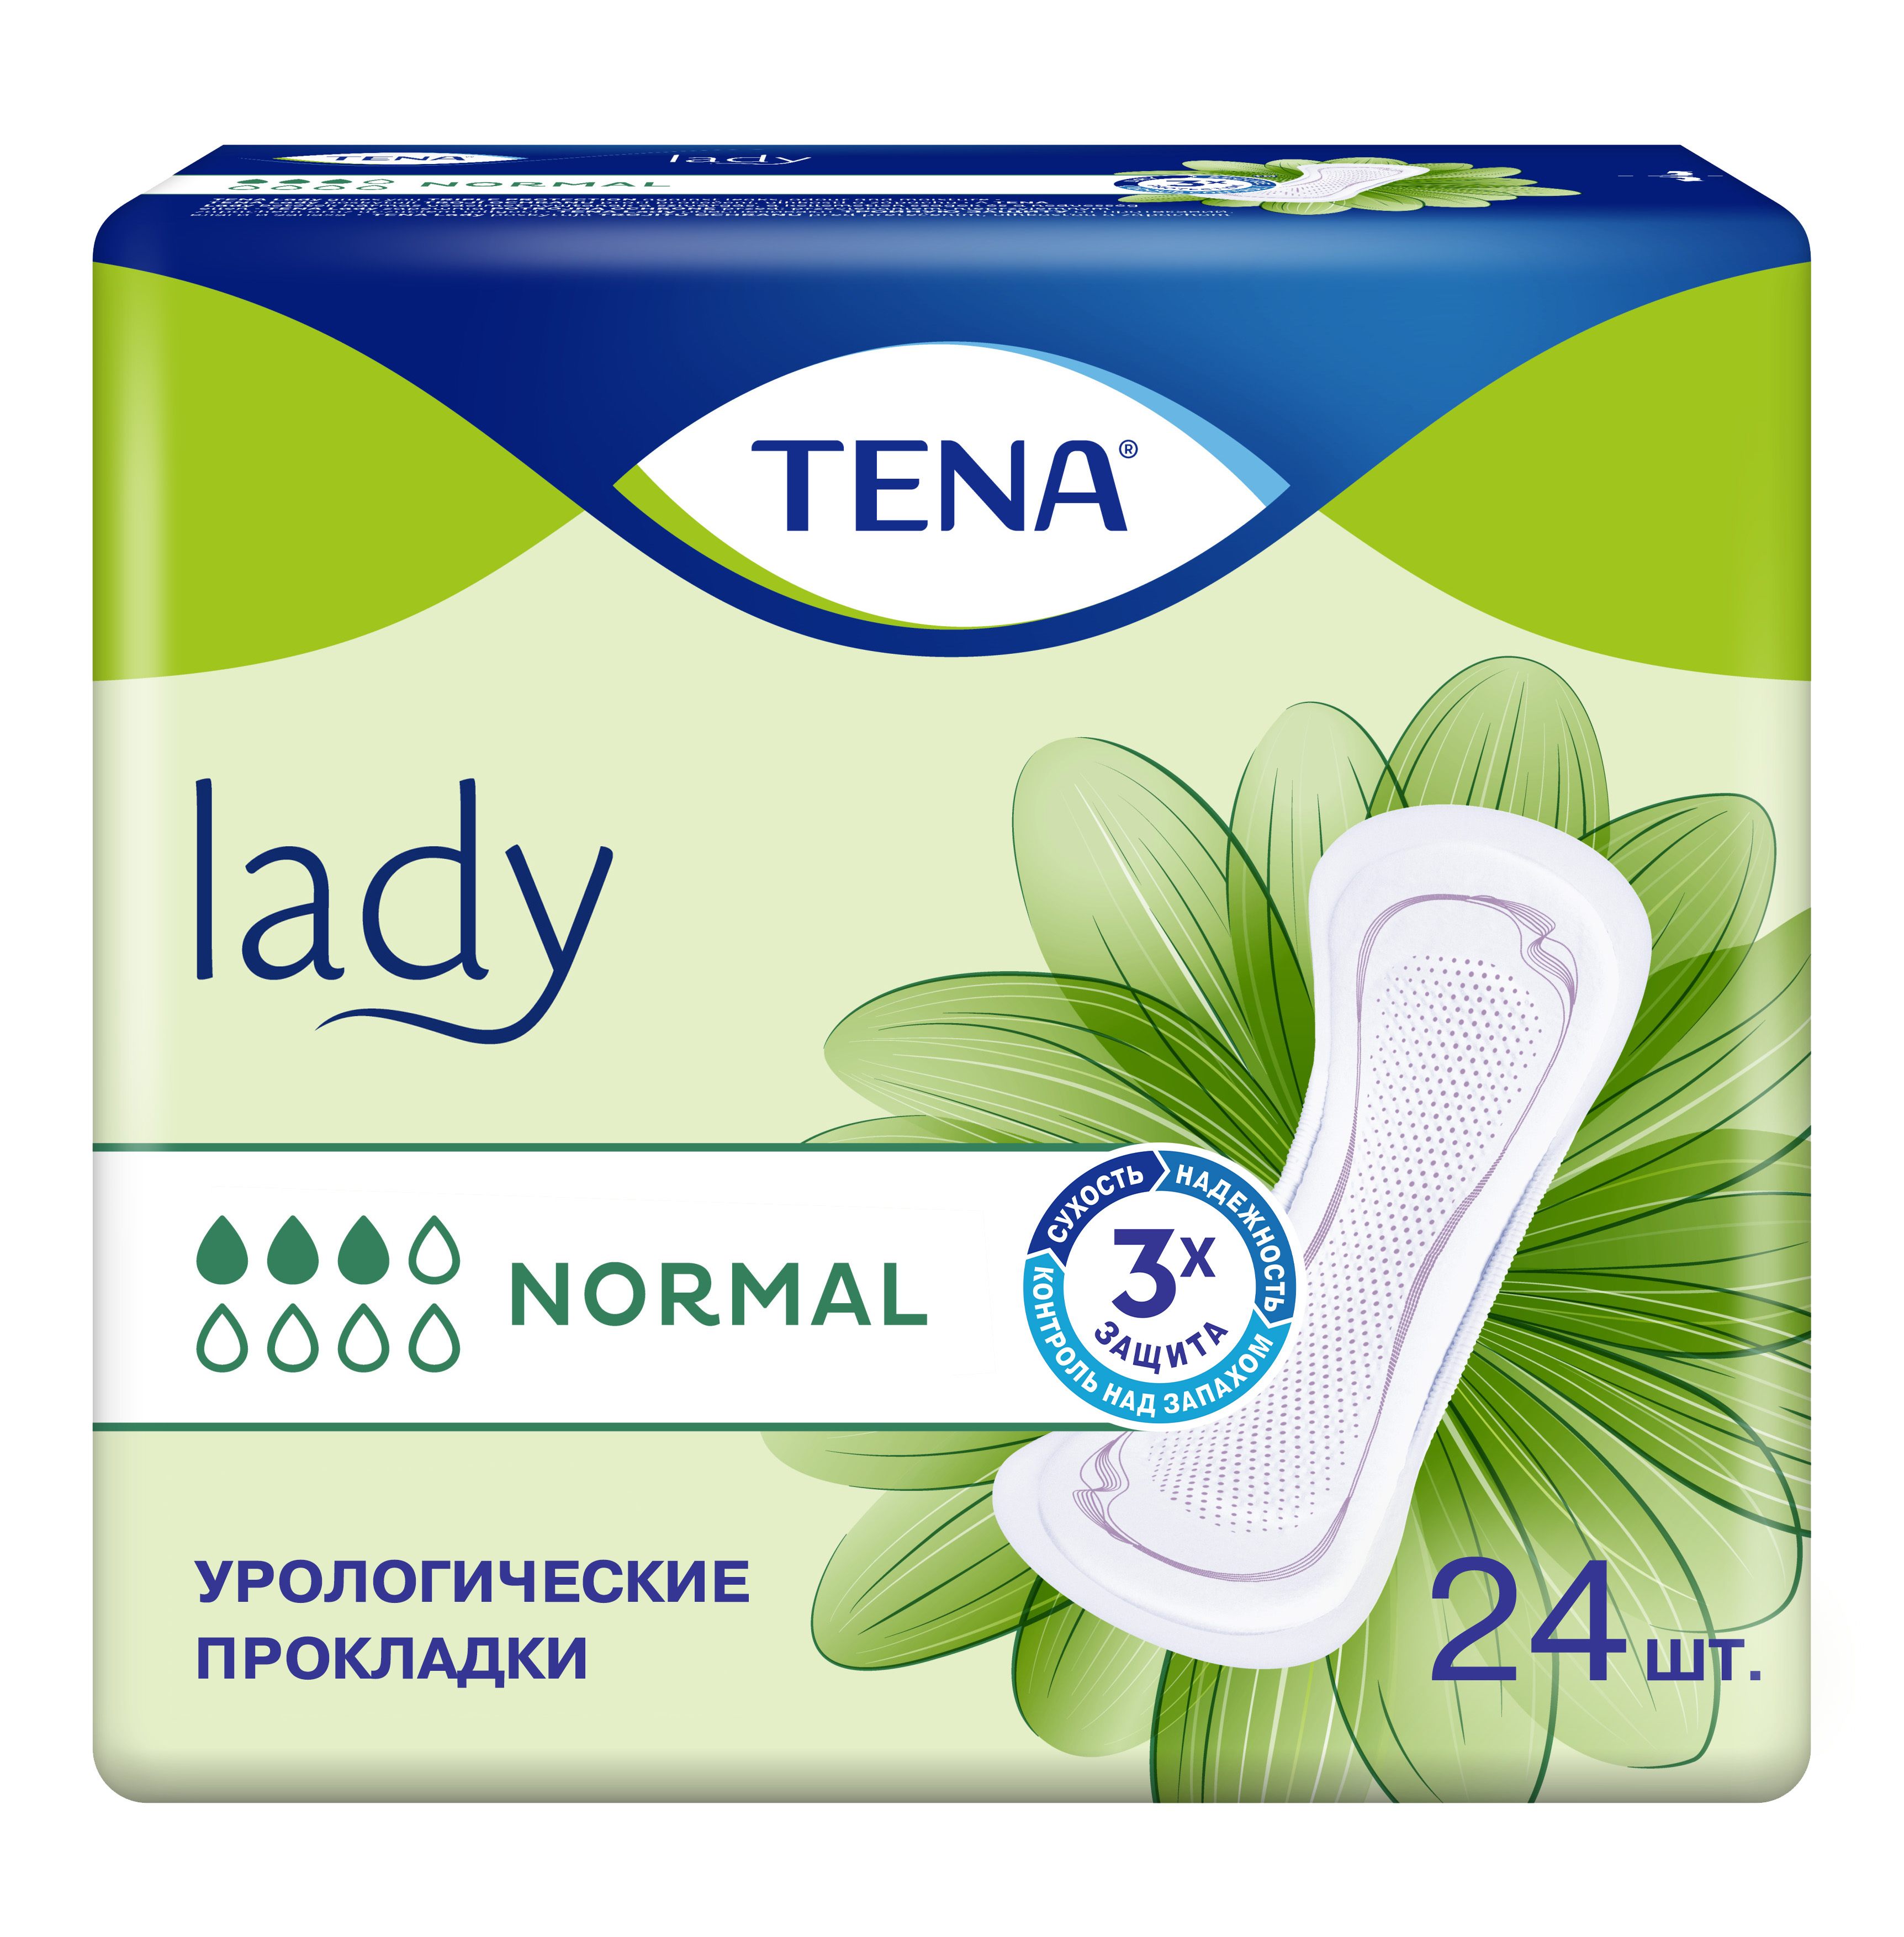 Тена Lady нормал, прокладки урологические, 24 шт. lady